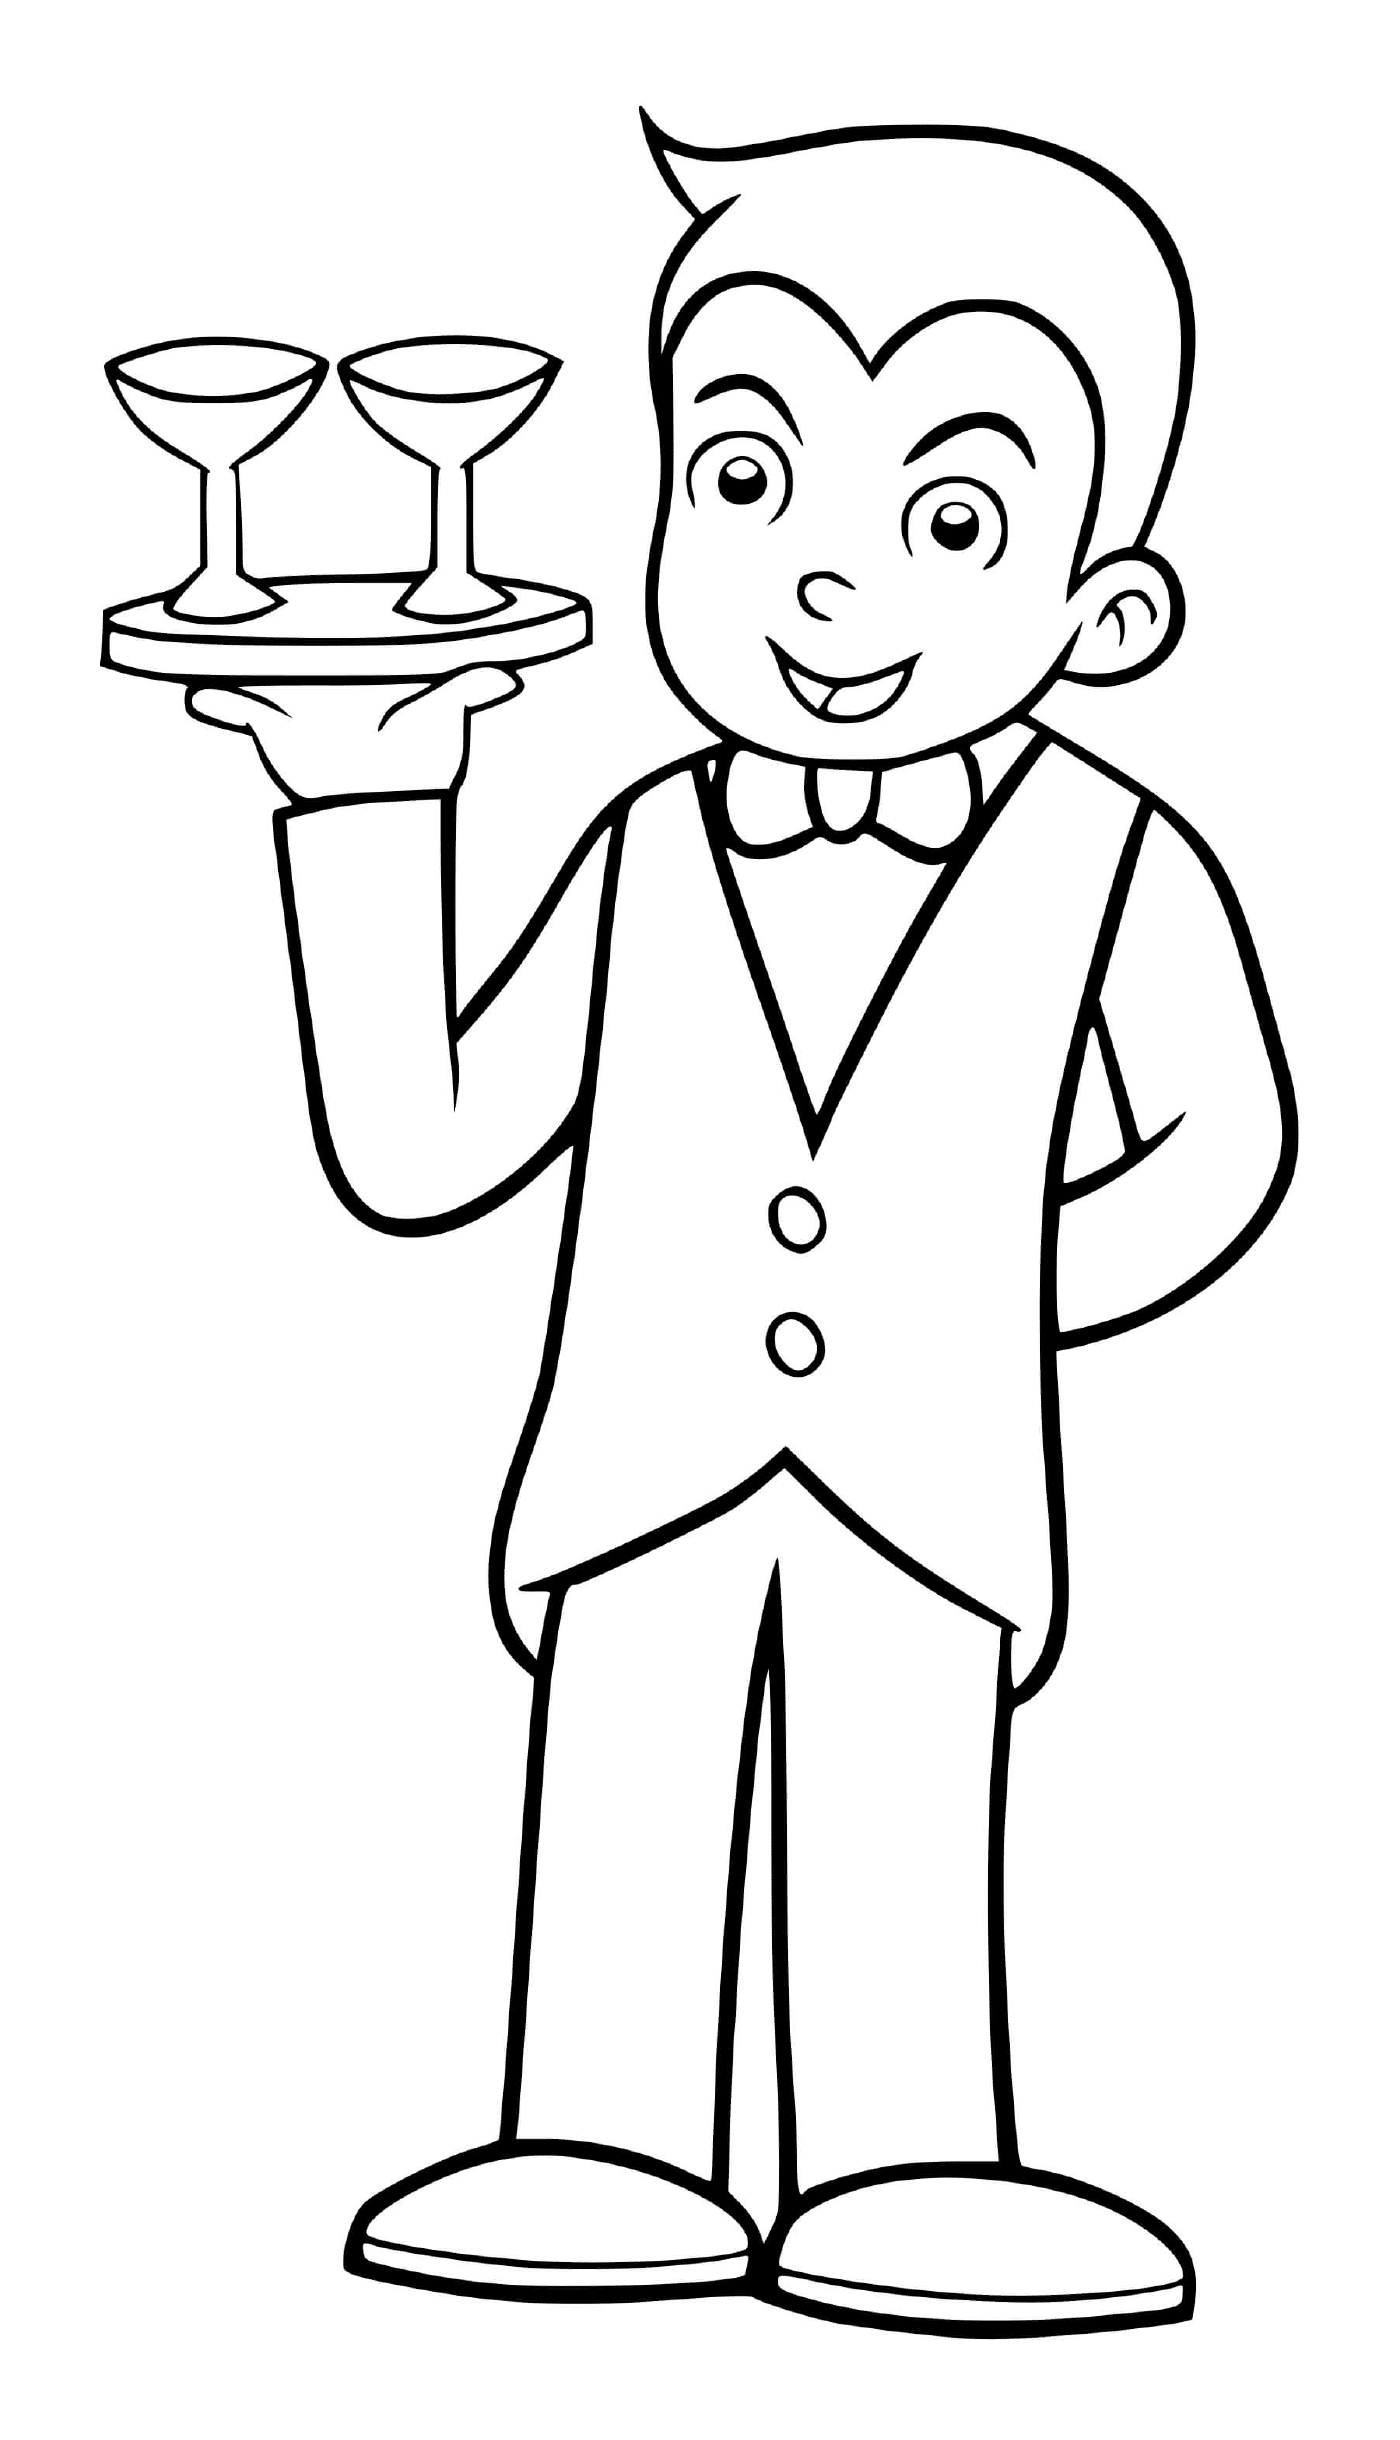  一个男孩假装做餐厅服务员 